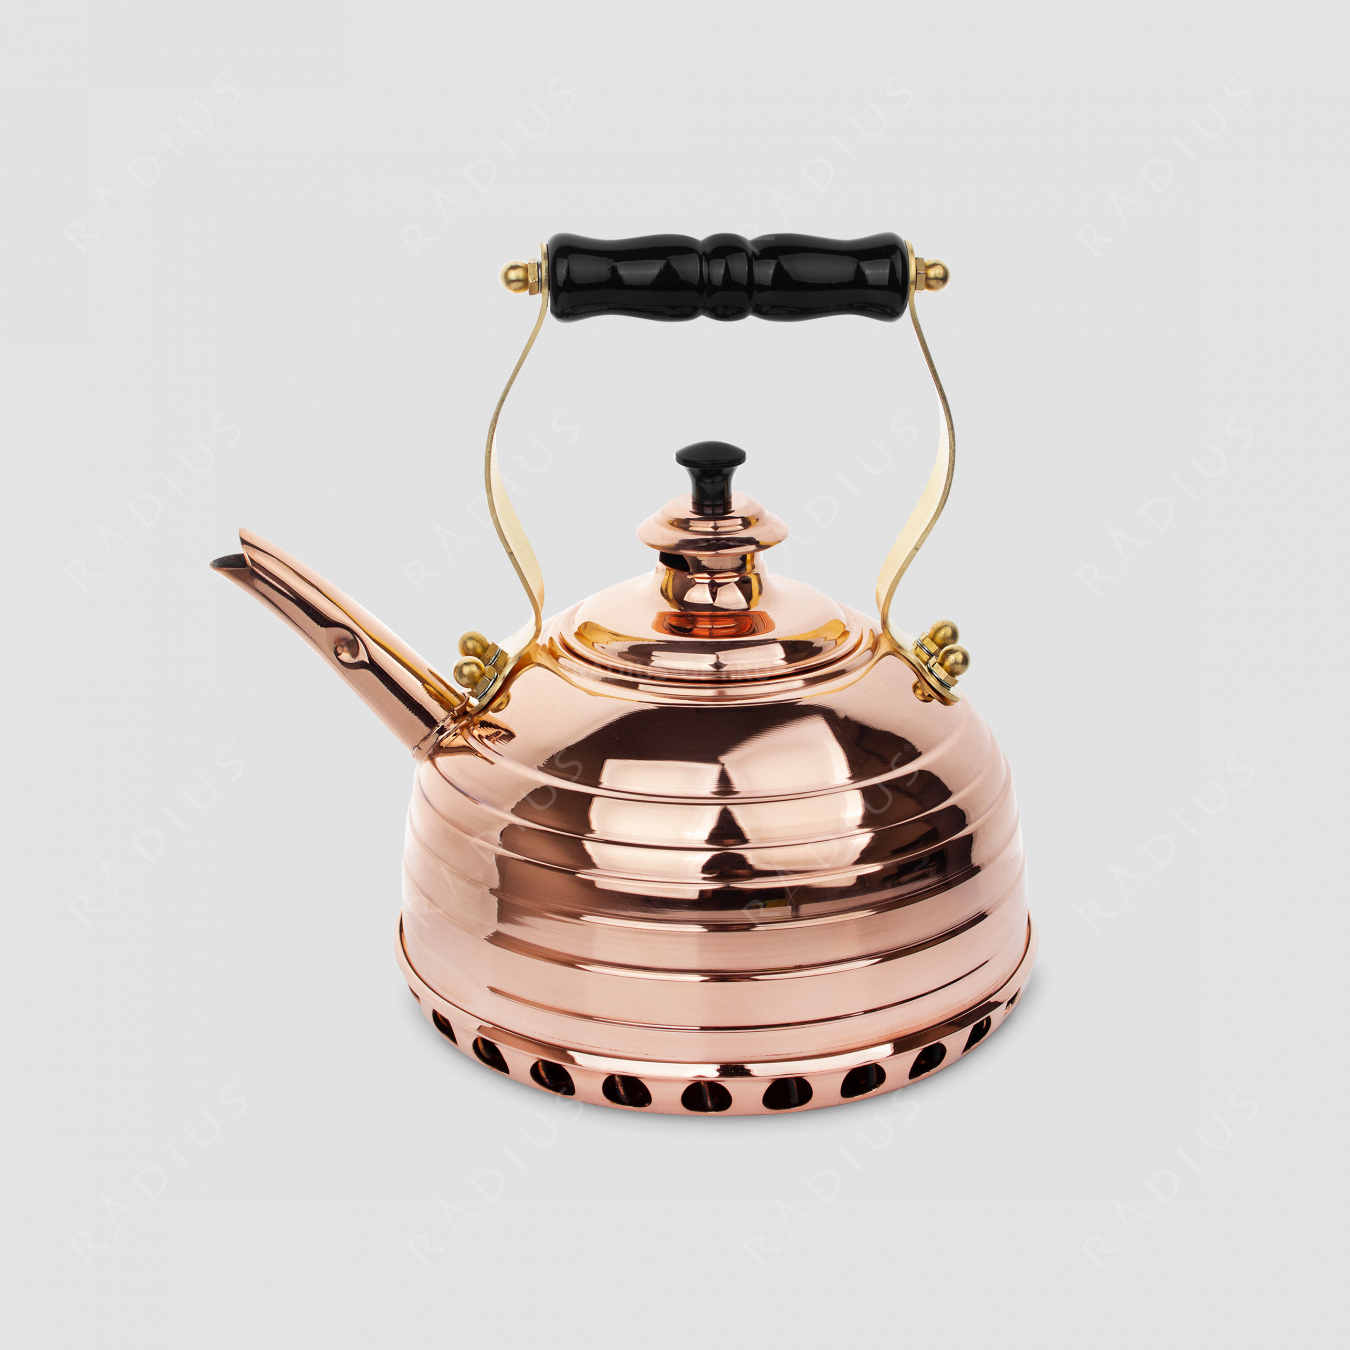 Чайник для плиты (газ) эдвардианской ручной работы, медь, объем 1,7 л, серия Beehive, RICHMOND, Великобритания